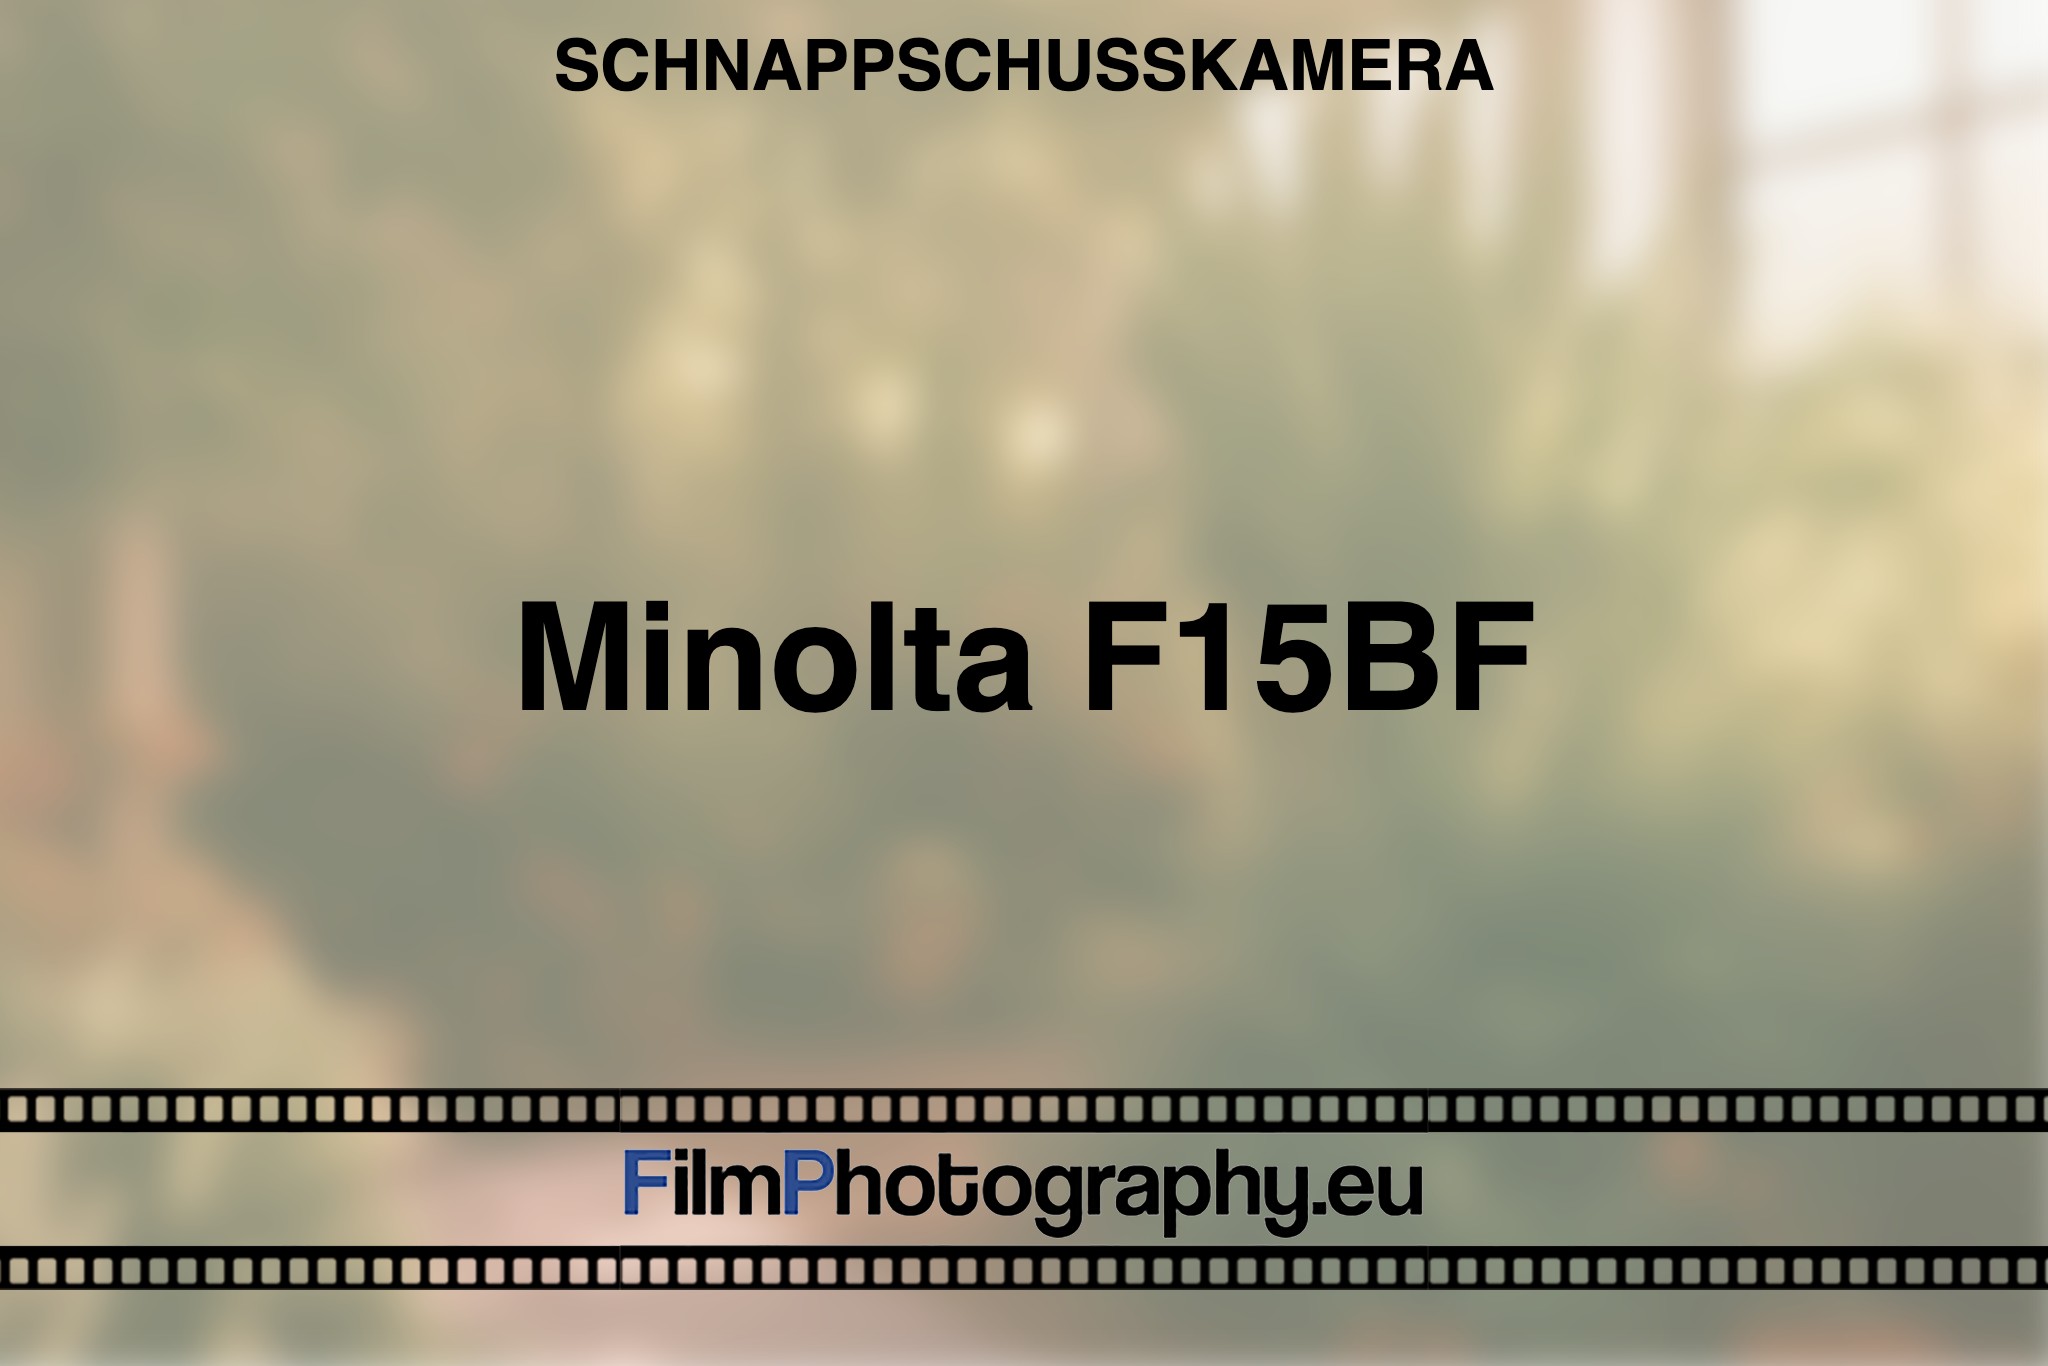 minolta-f15bf-schnappschusskamera-bnv